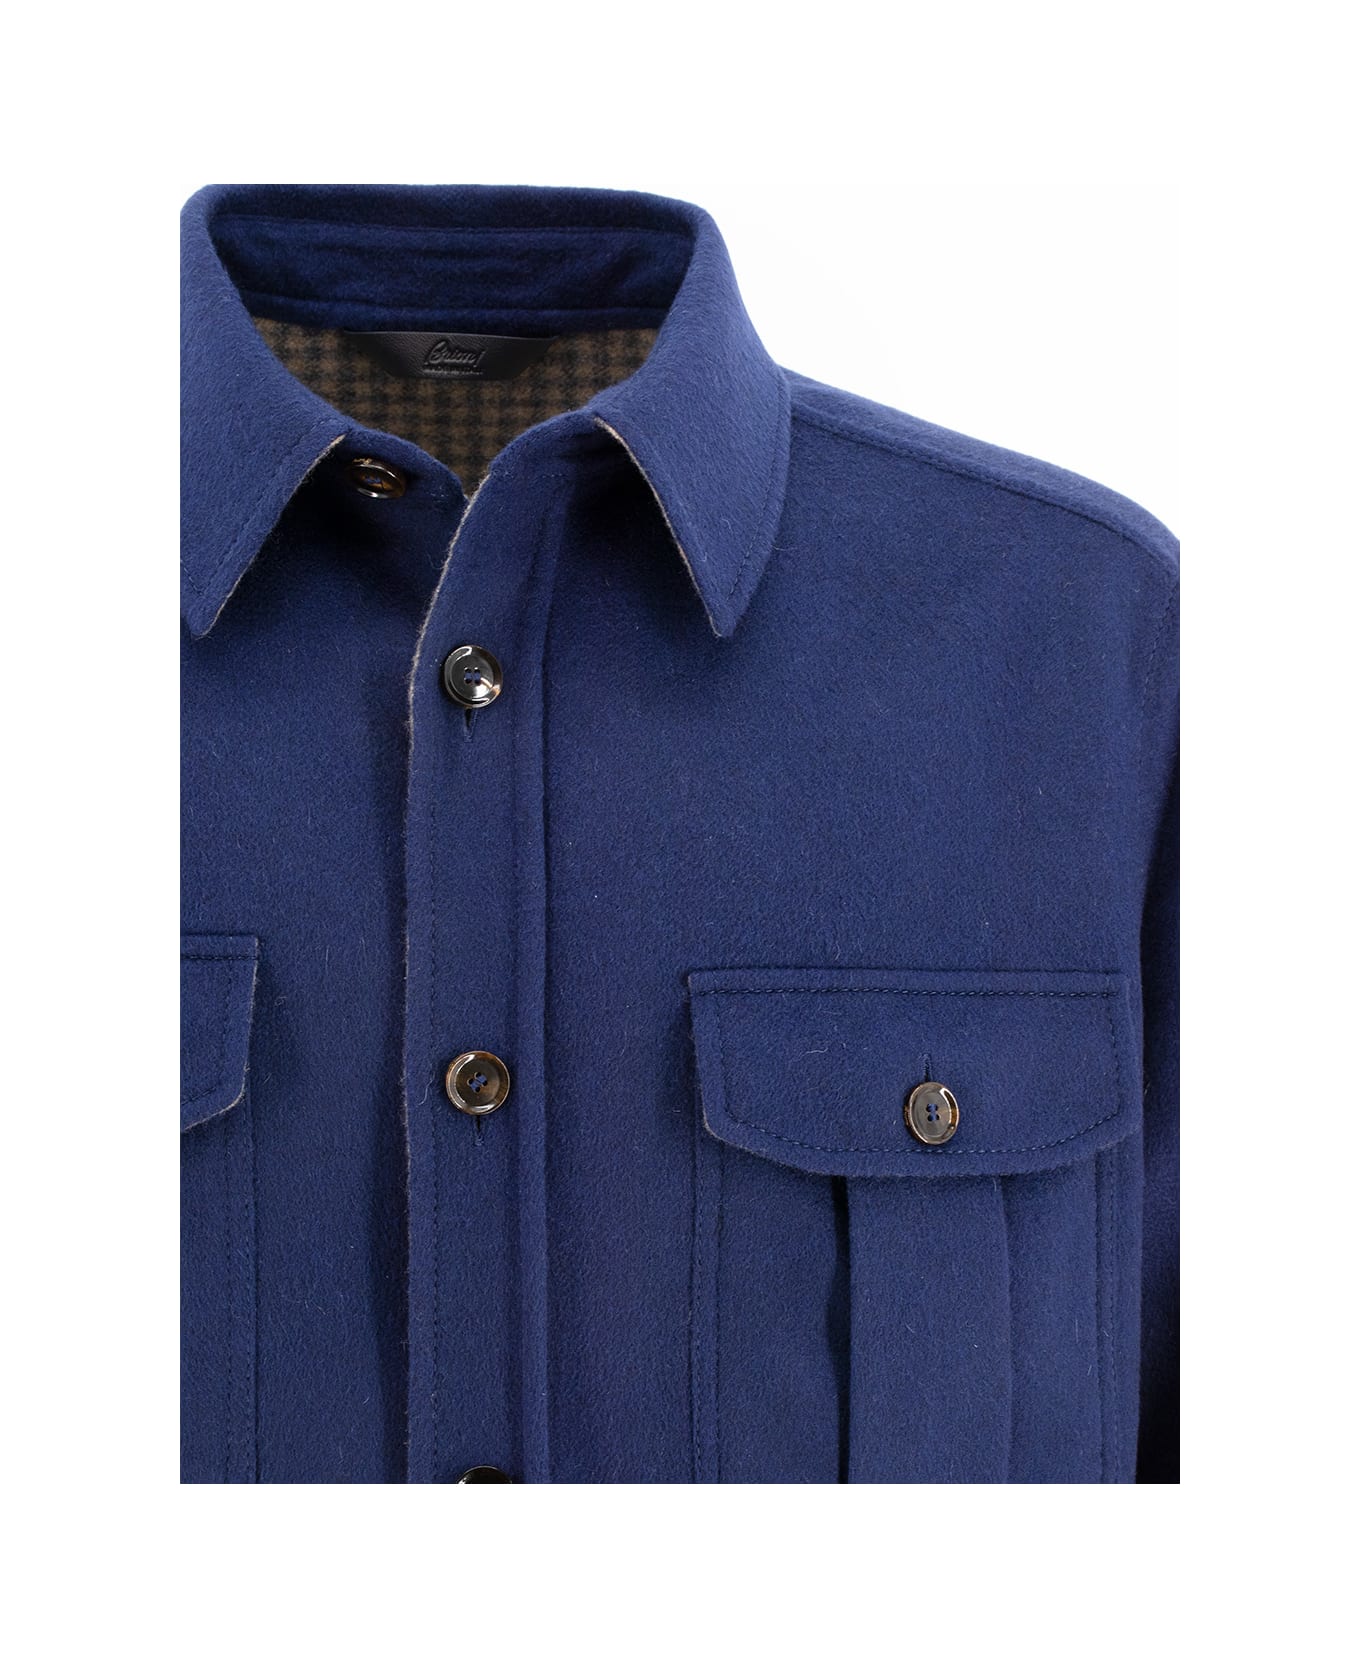 Brioni Jacket - MIDNIGHT BLUE/BEIGE